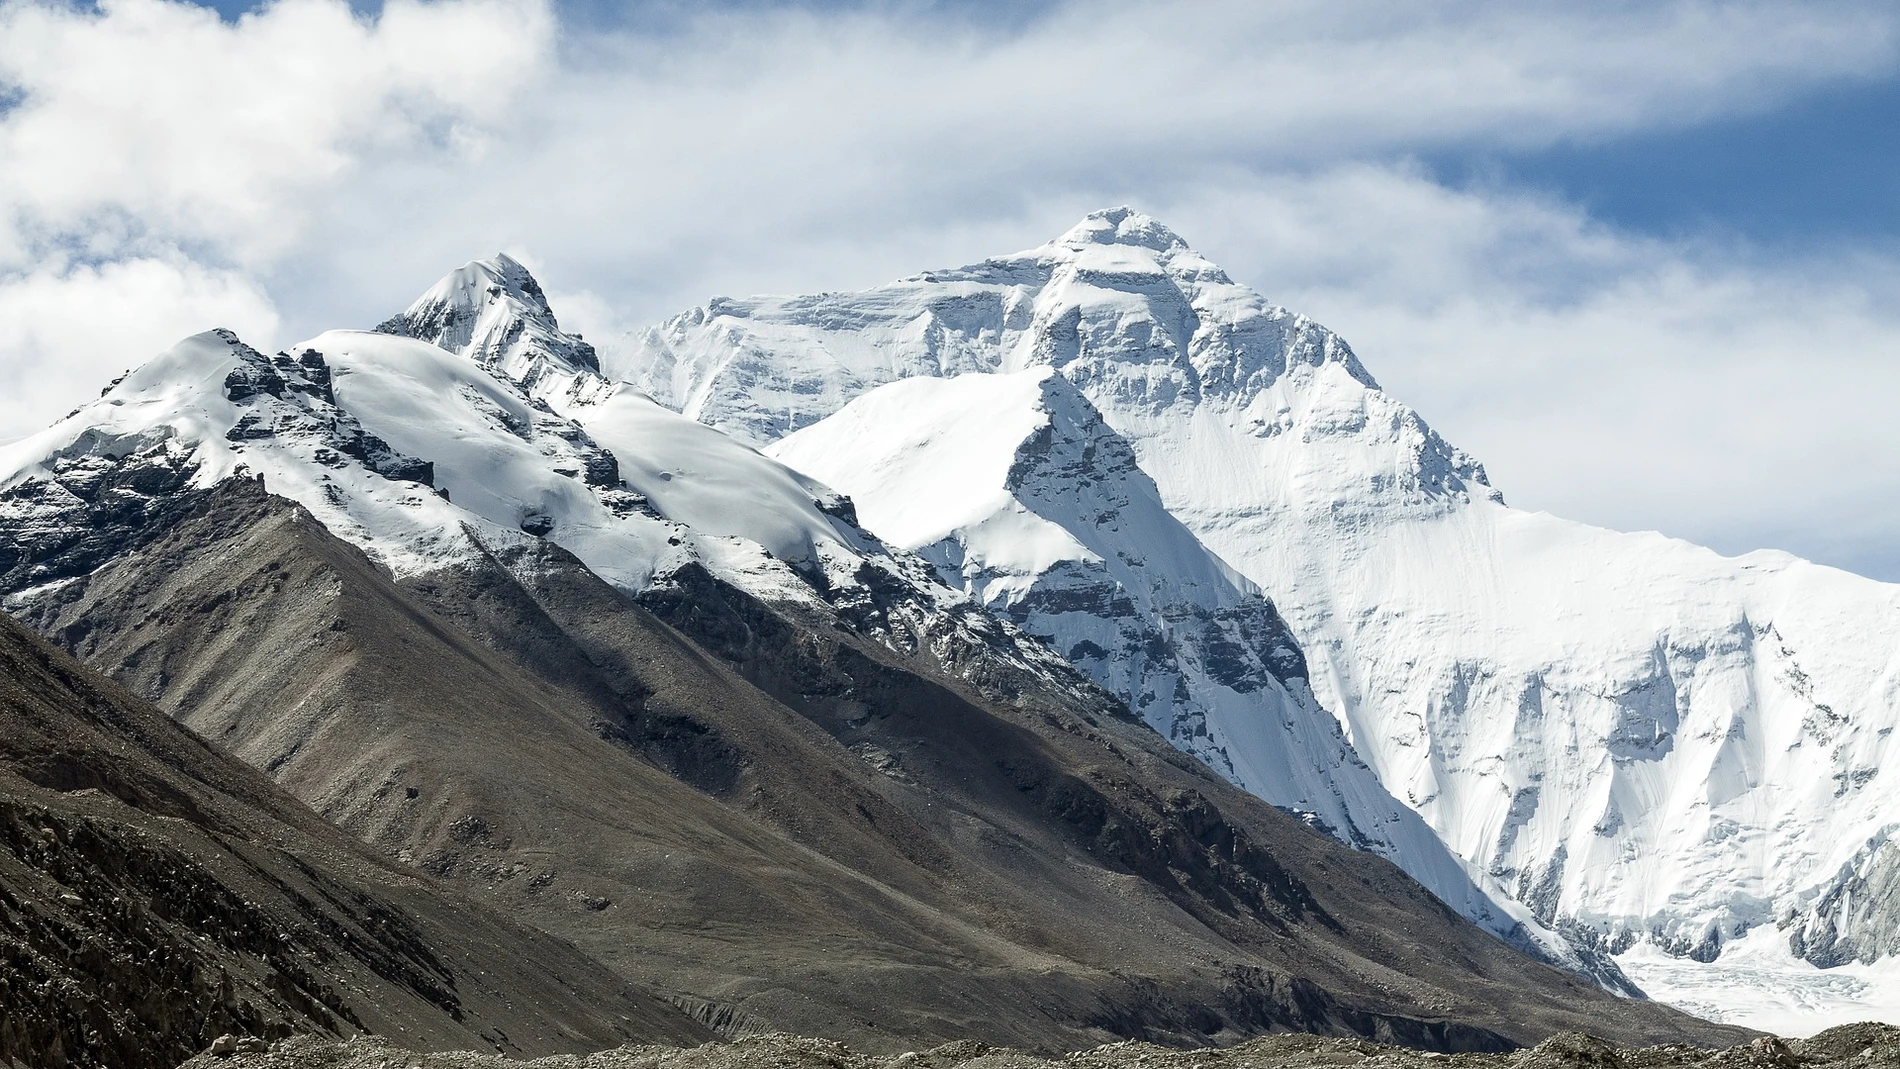 Hayan en un glaciar tibetano restos de virus de hace 15.000 años que podrían ayudar a predecir el cambio climático 